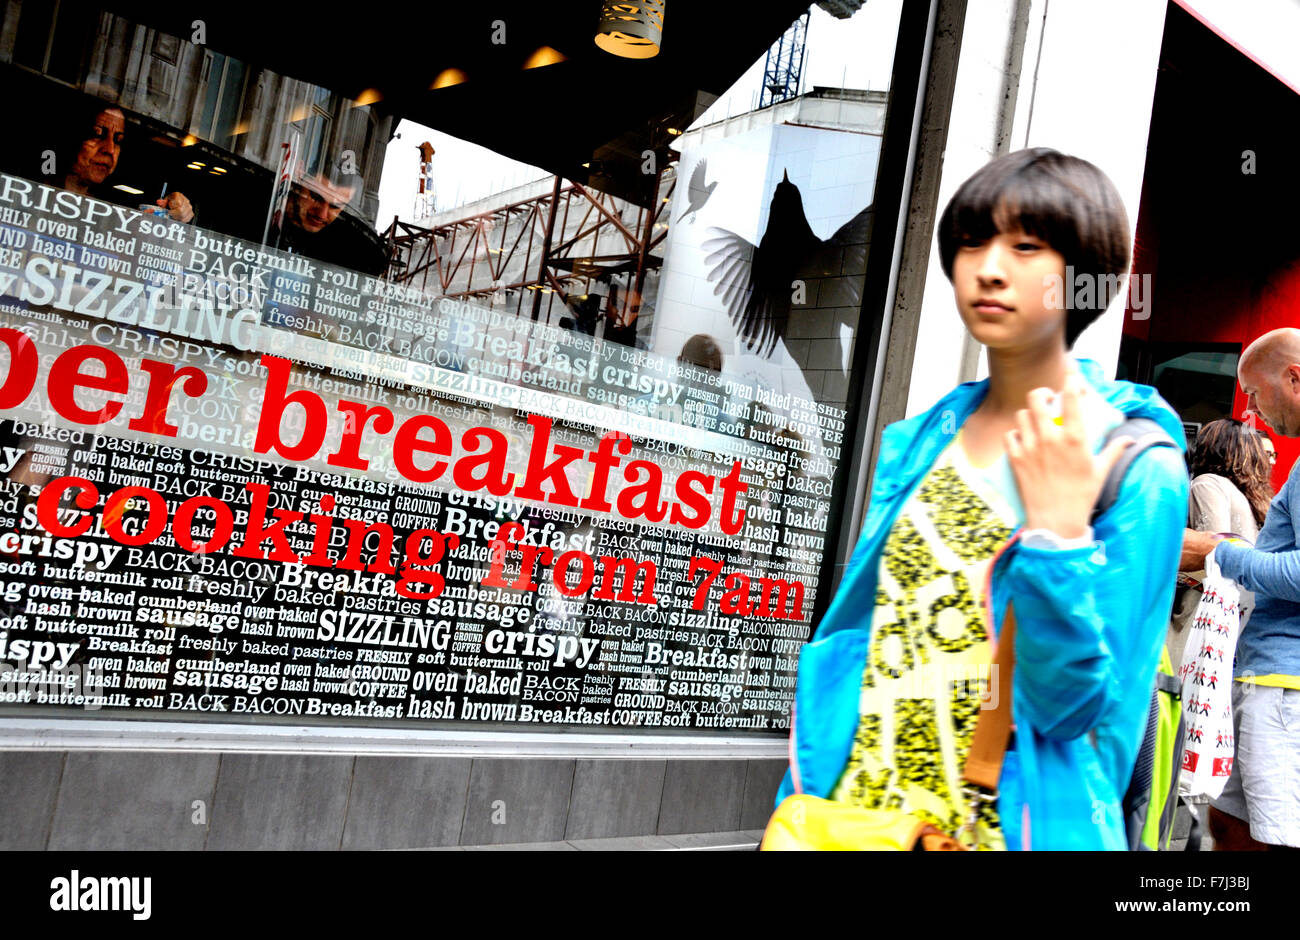 Londra, Inghilterra, Regno Unito. La prima colazione - la giovane donna asiatica oltrepassando un cafe specializzato in b&b Foto Stock